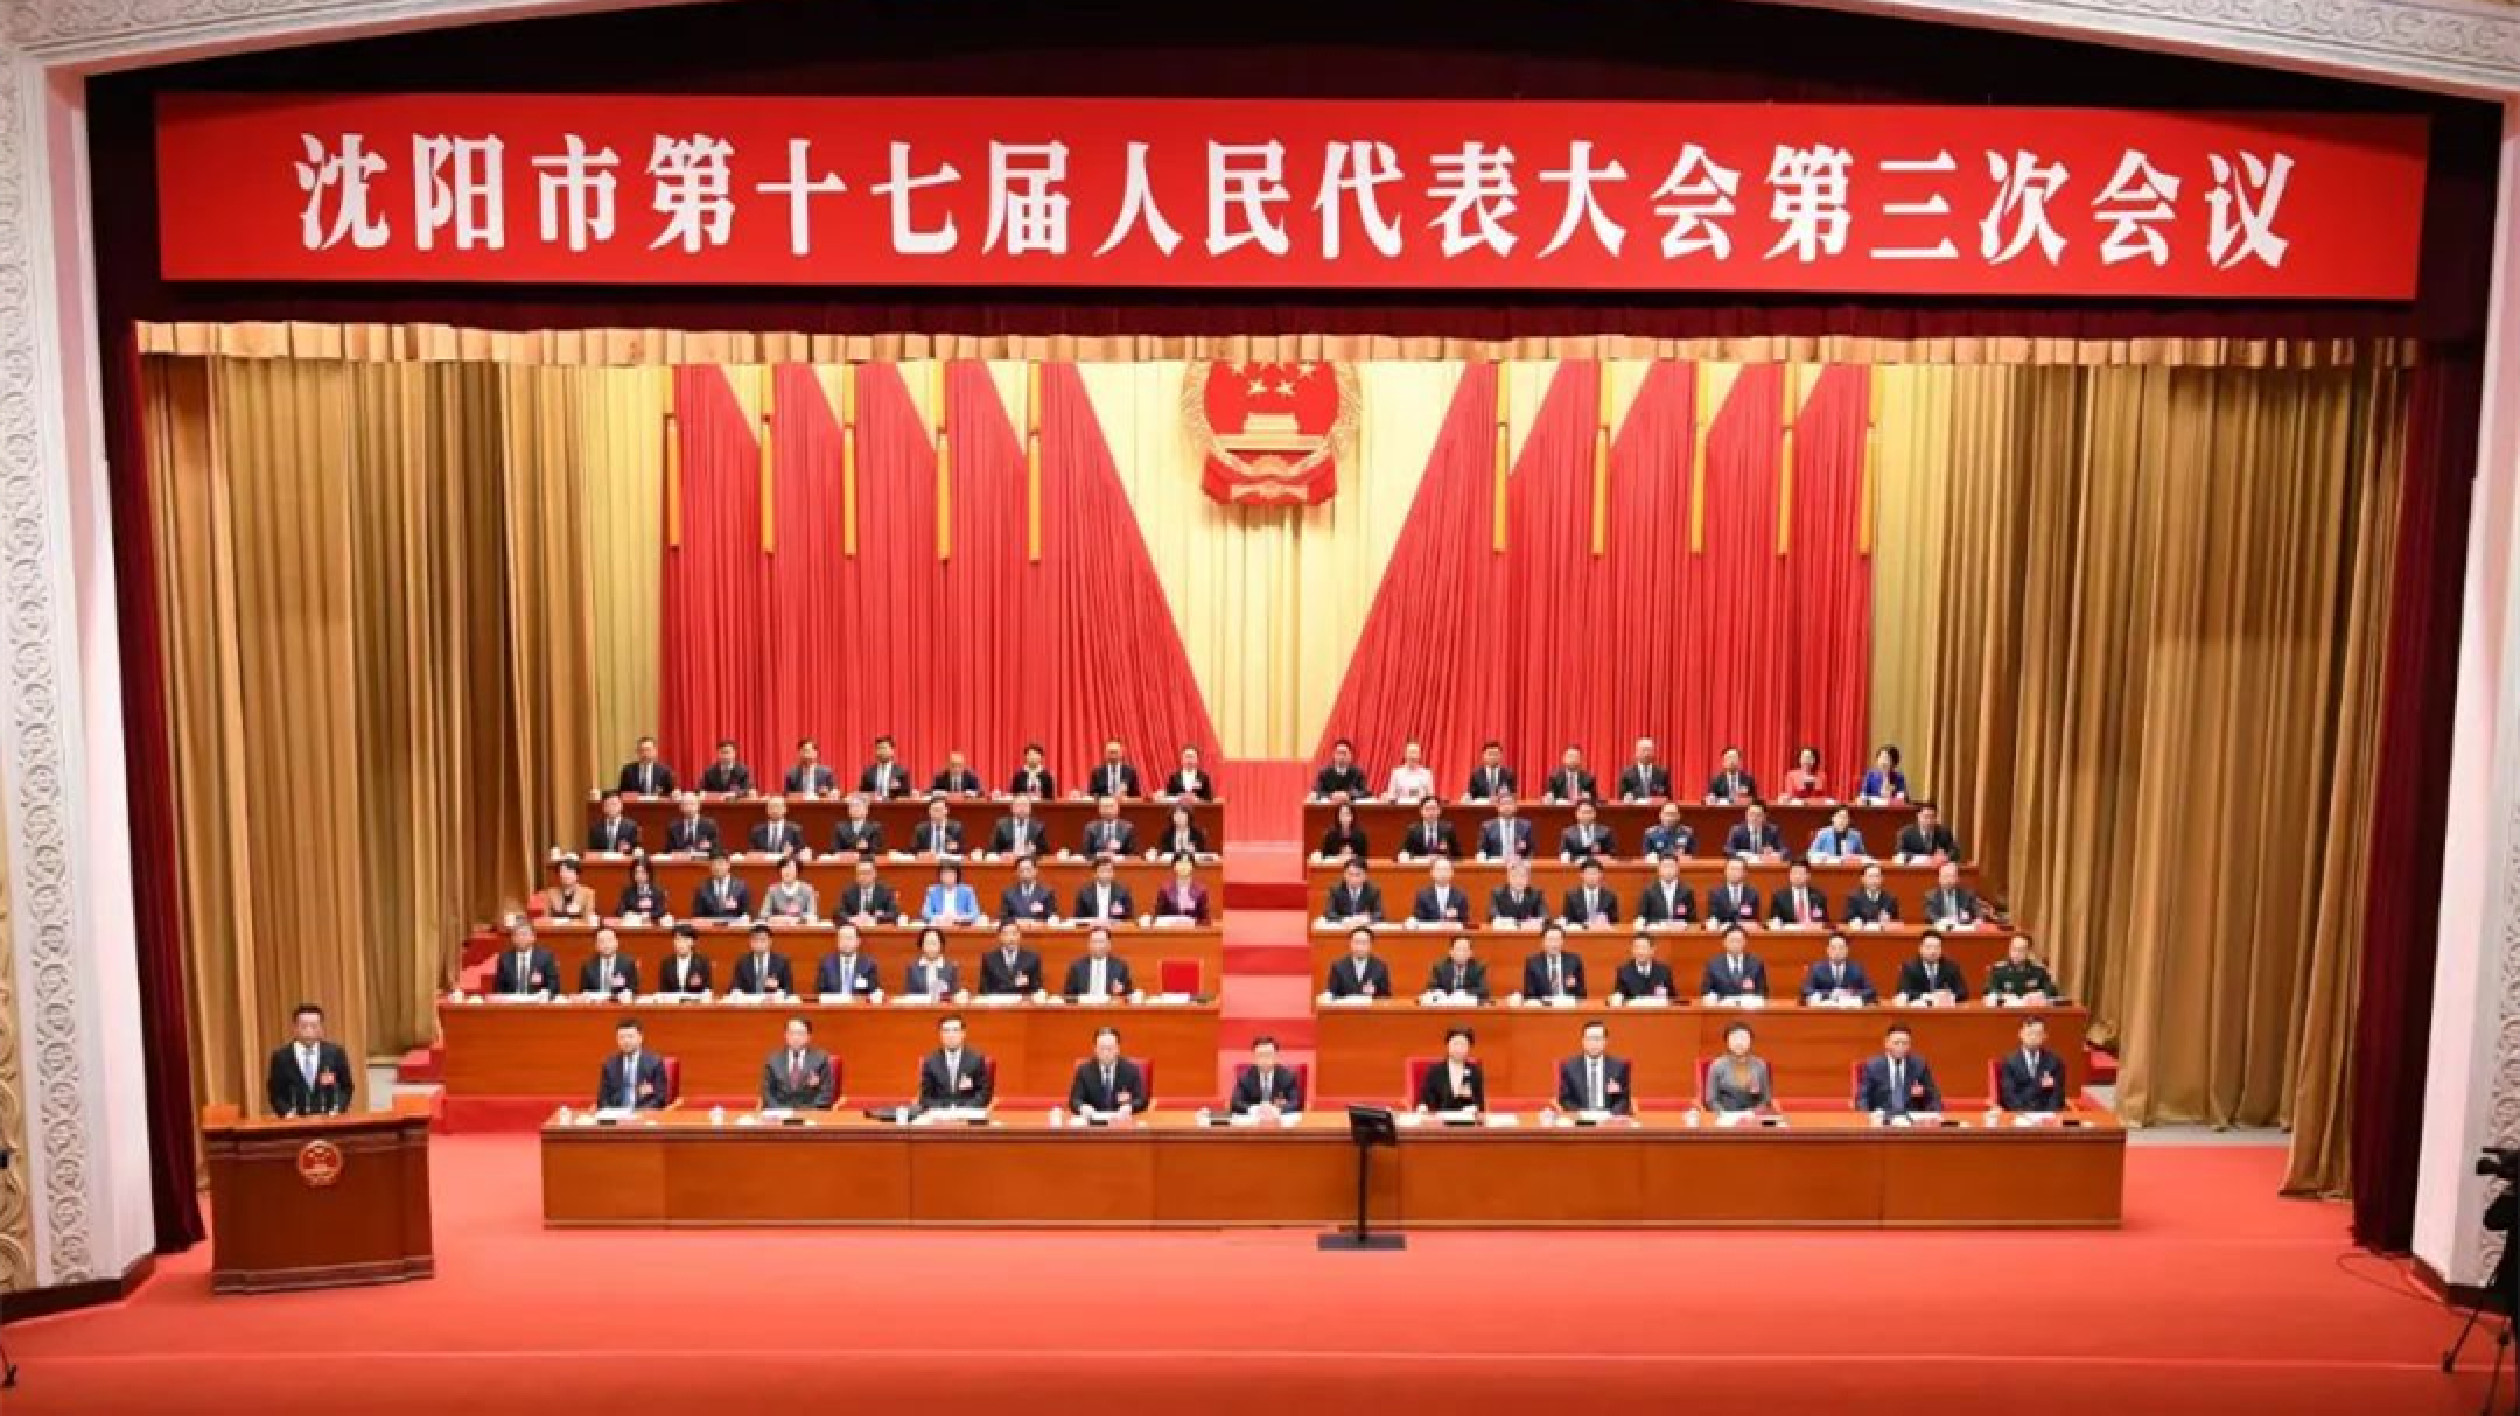 瀋陽市十七屆人大三次會議隆重開幕 政府工作報告亮點多多